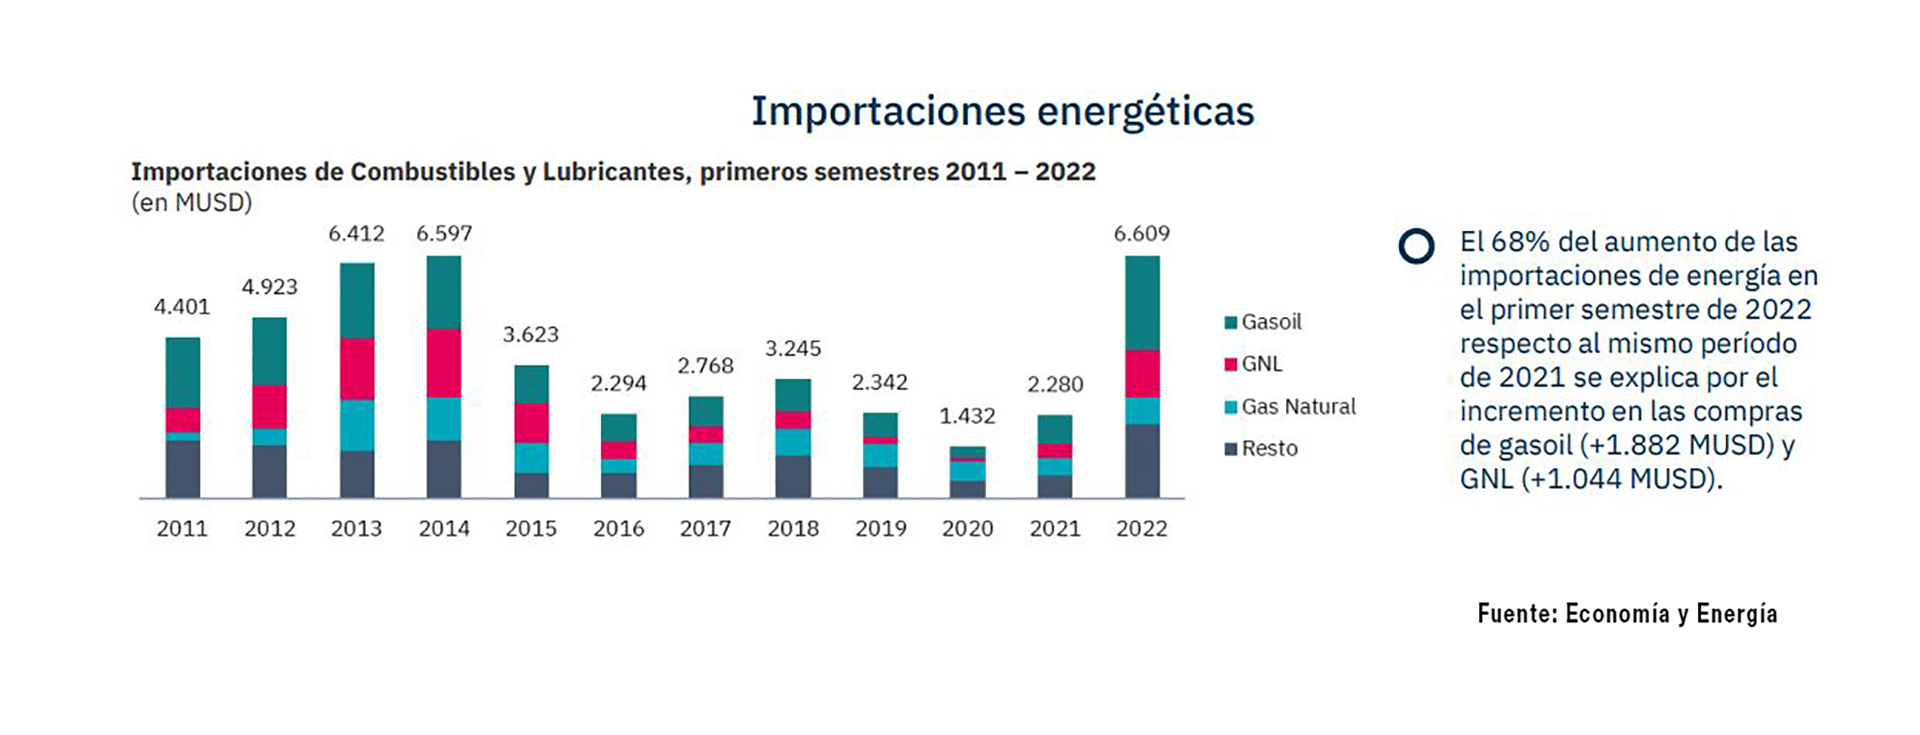 El detalle de las importaciones energéticas de los últimos once años. En 2022 más de dos tercios del aumento de las compras fueron de gasoil y gas natural